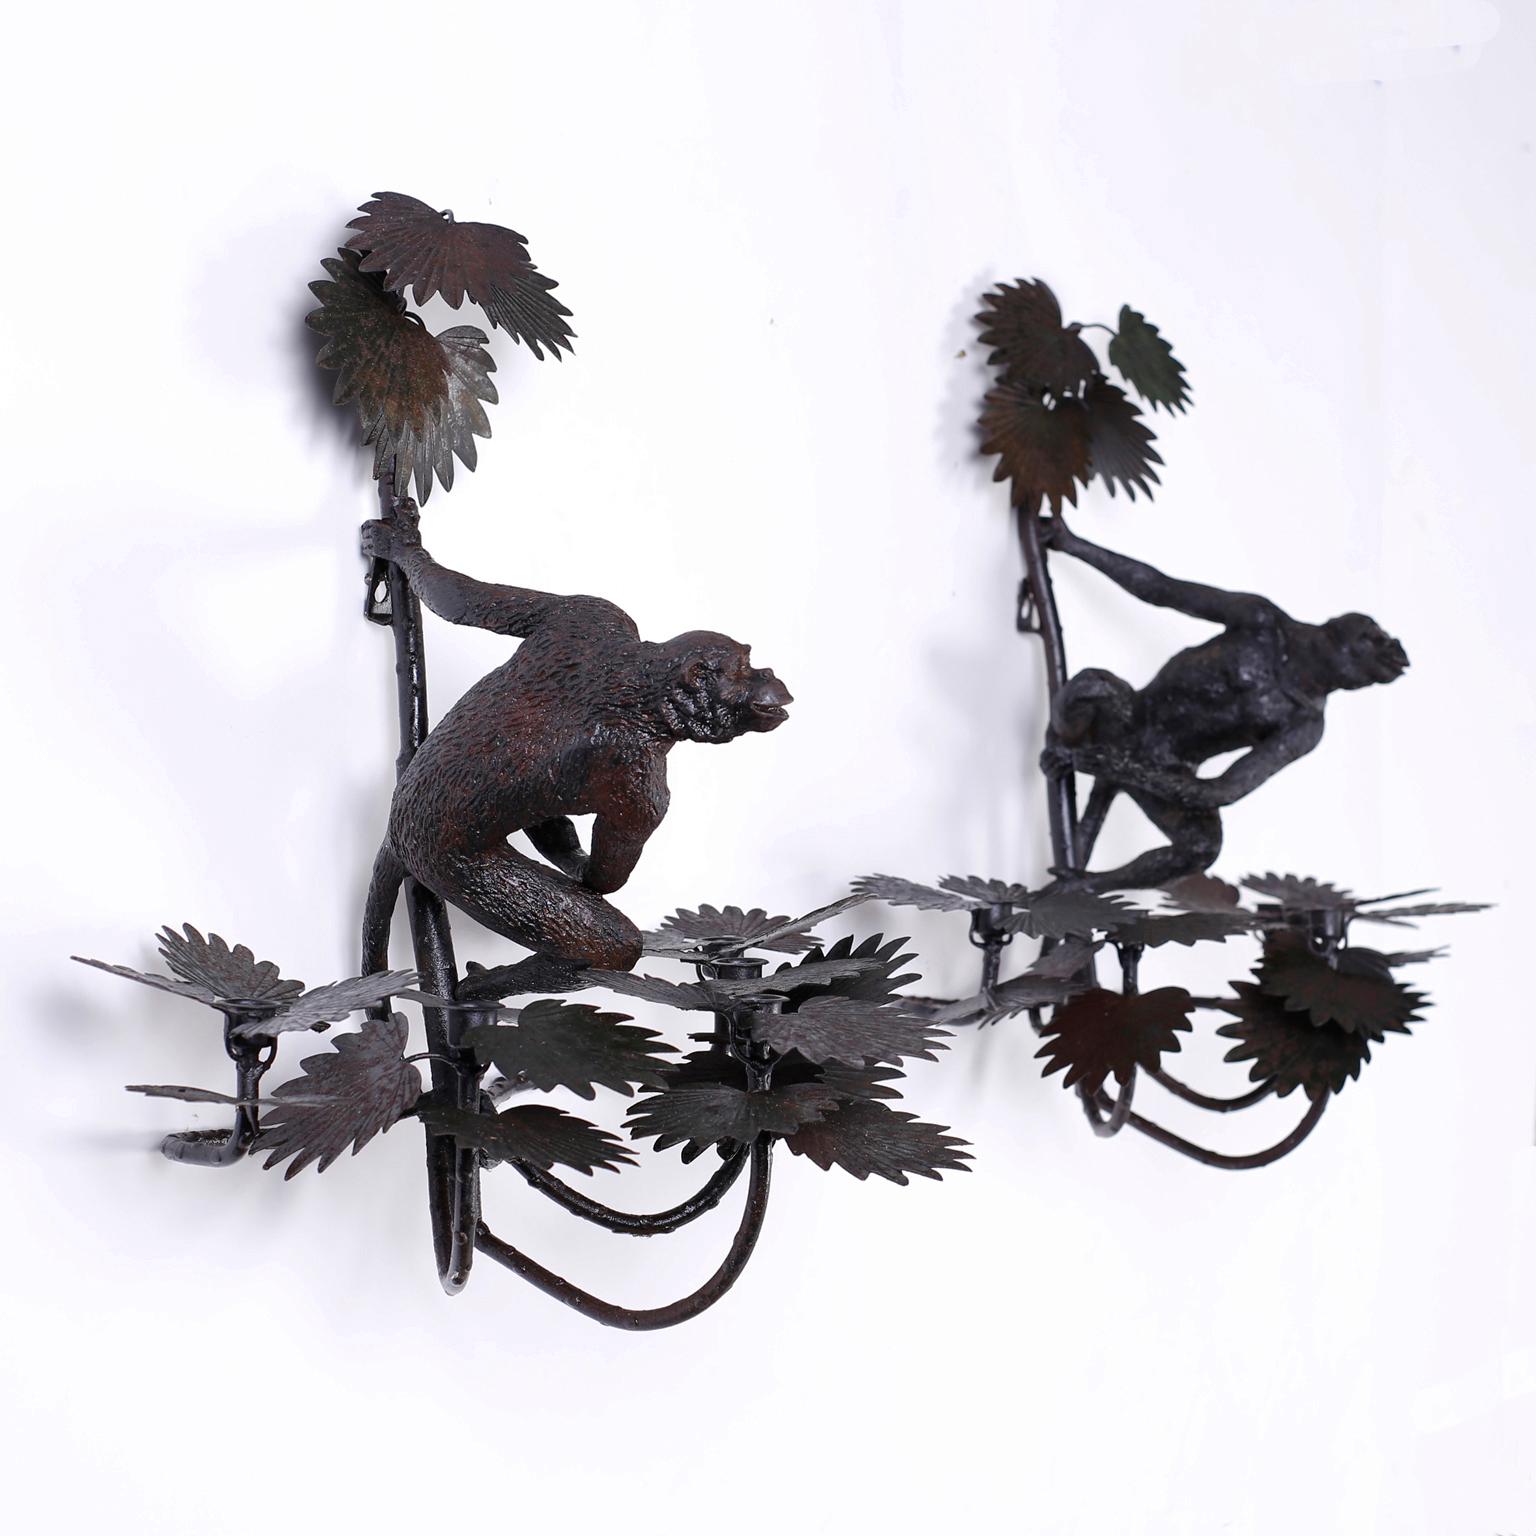 Ein Paar Wandleuchter mit leicht oxidierter Oberfläche, fünf Kerzenschalen in Palmblattbüscheln und gusseisernen Affen in einer vertrauten, spöttischen Pose.